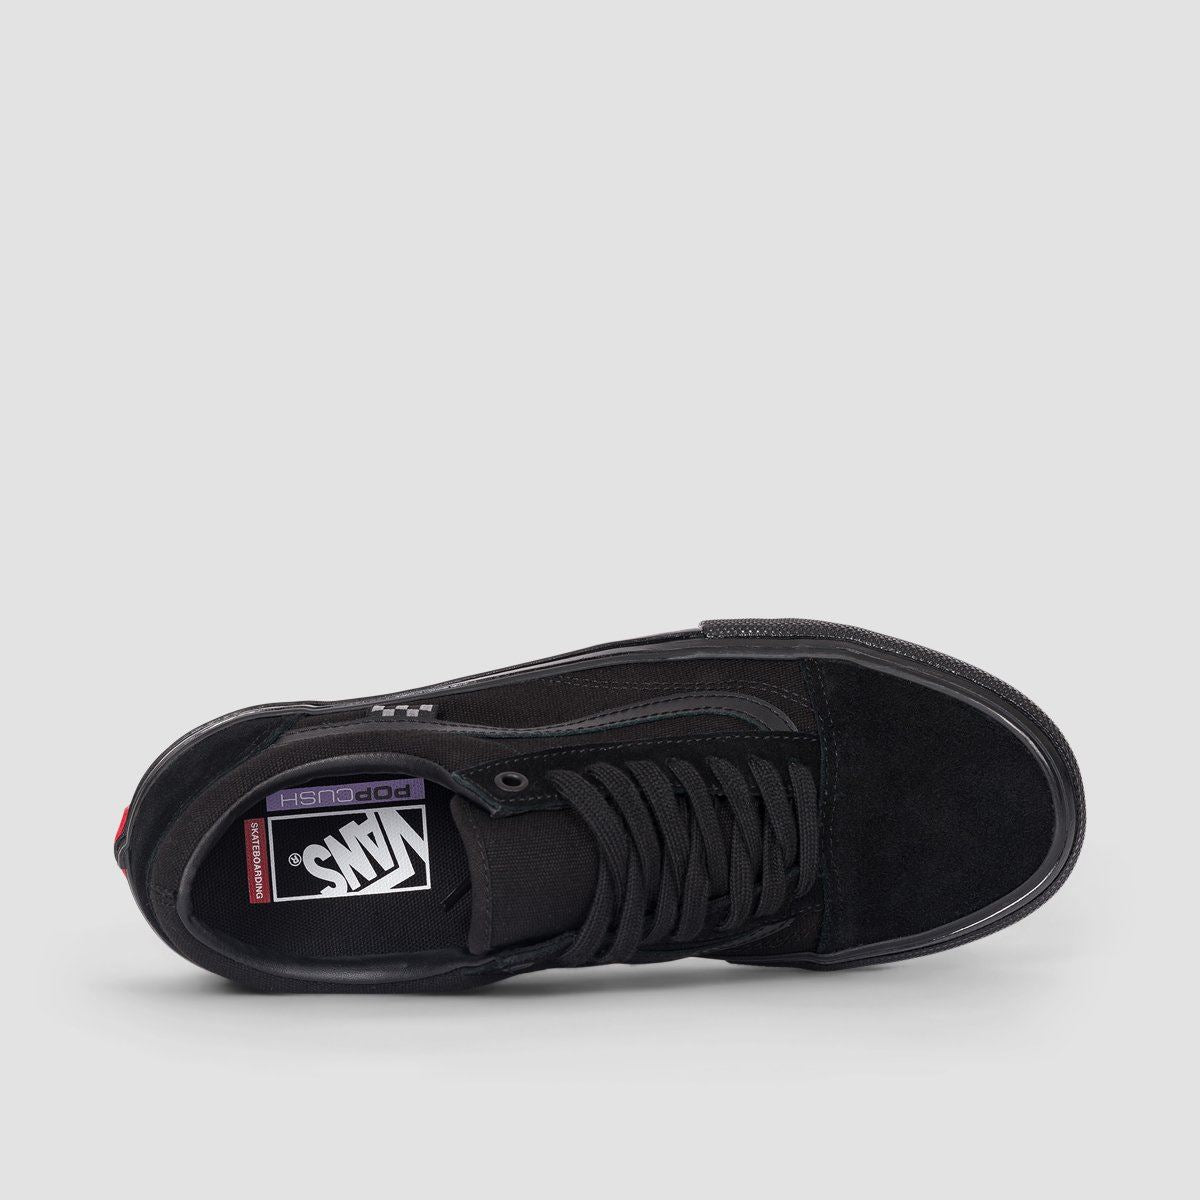 Vans Skate Old Skool Shoes - Black/Black